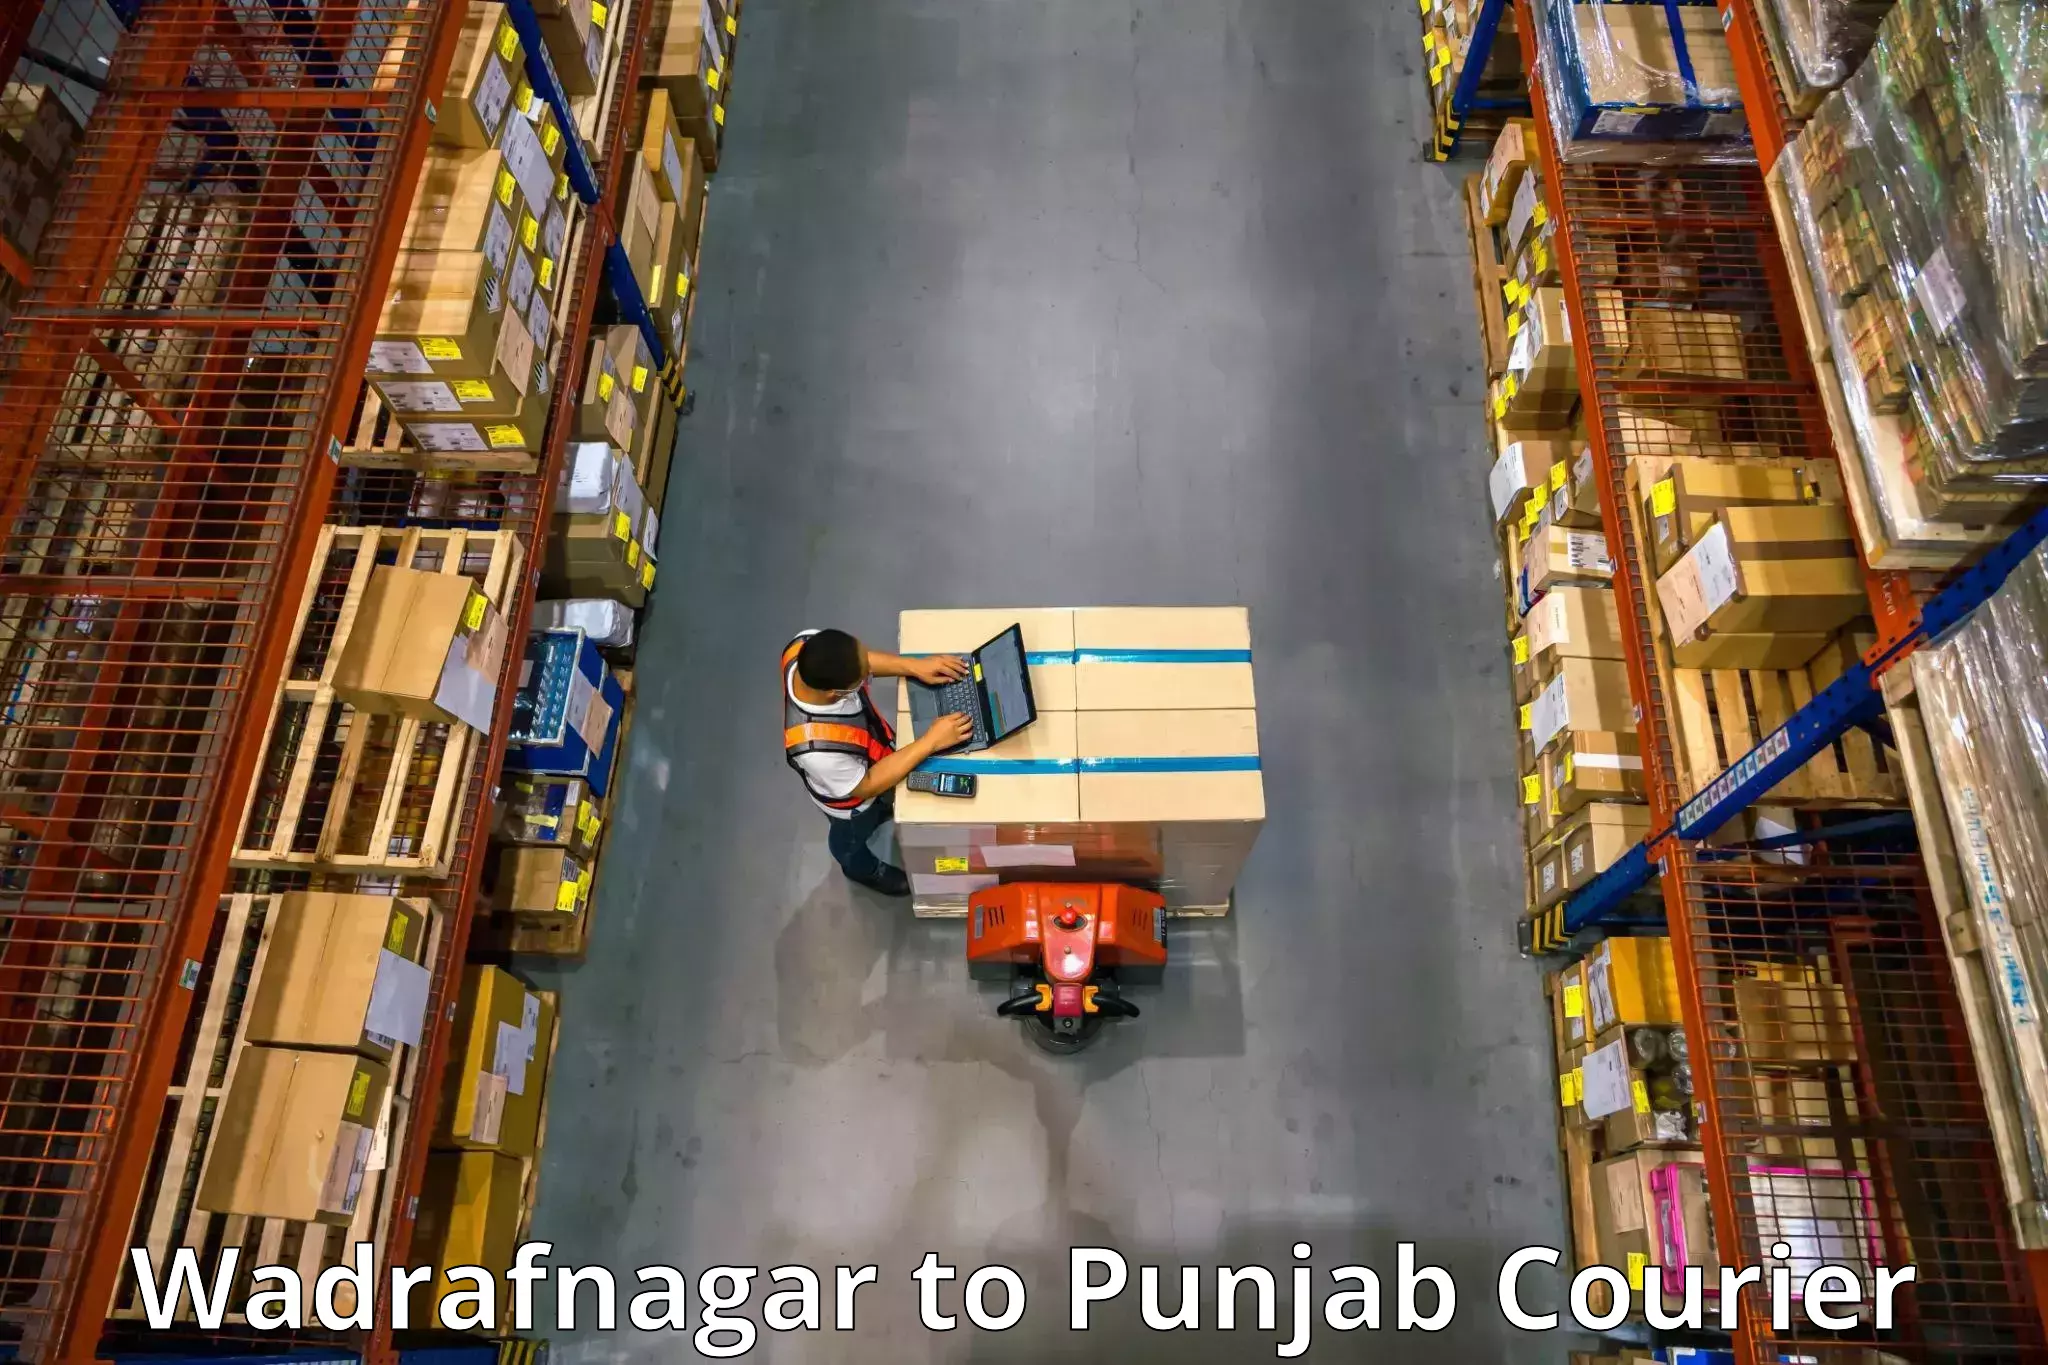 Furniture moving solutions Wadrafnagar to Jalandhar